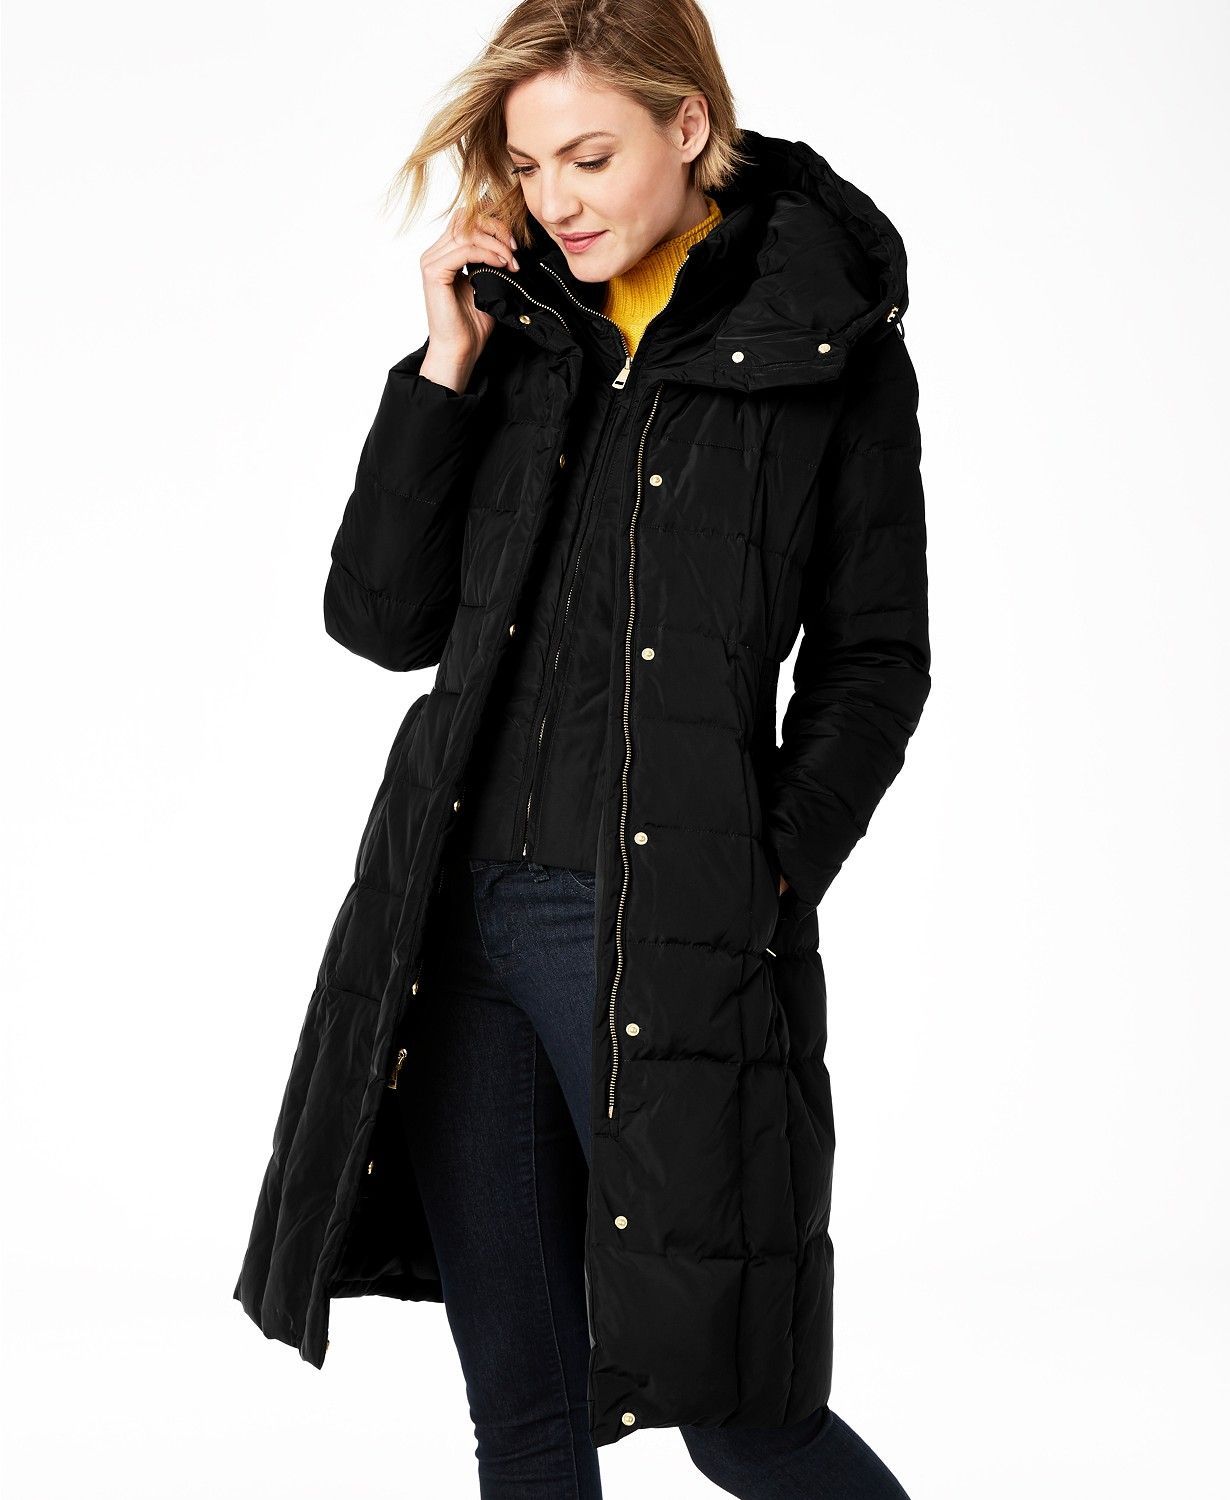 OldSch001 Womens Casual Jacket Winter Warm Parka Outwear Ladies Coat Overcoat 